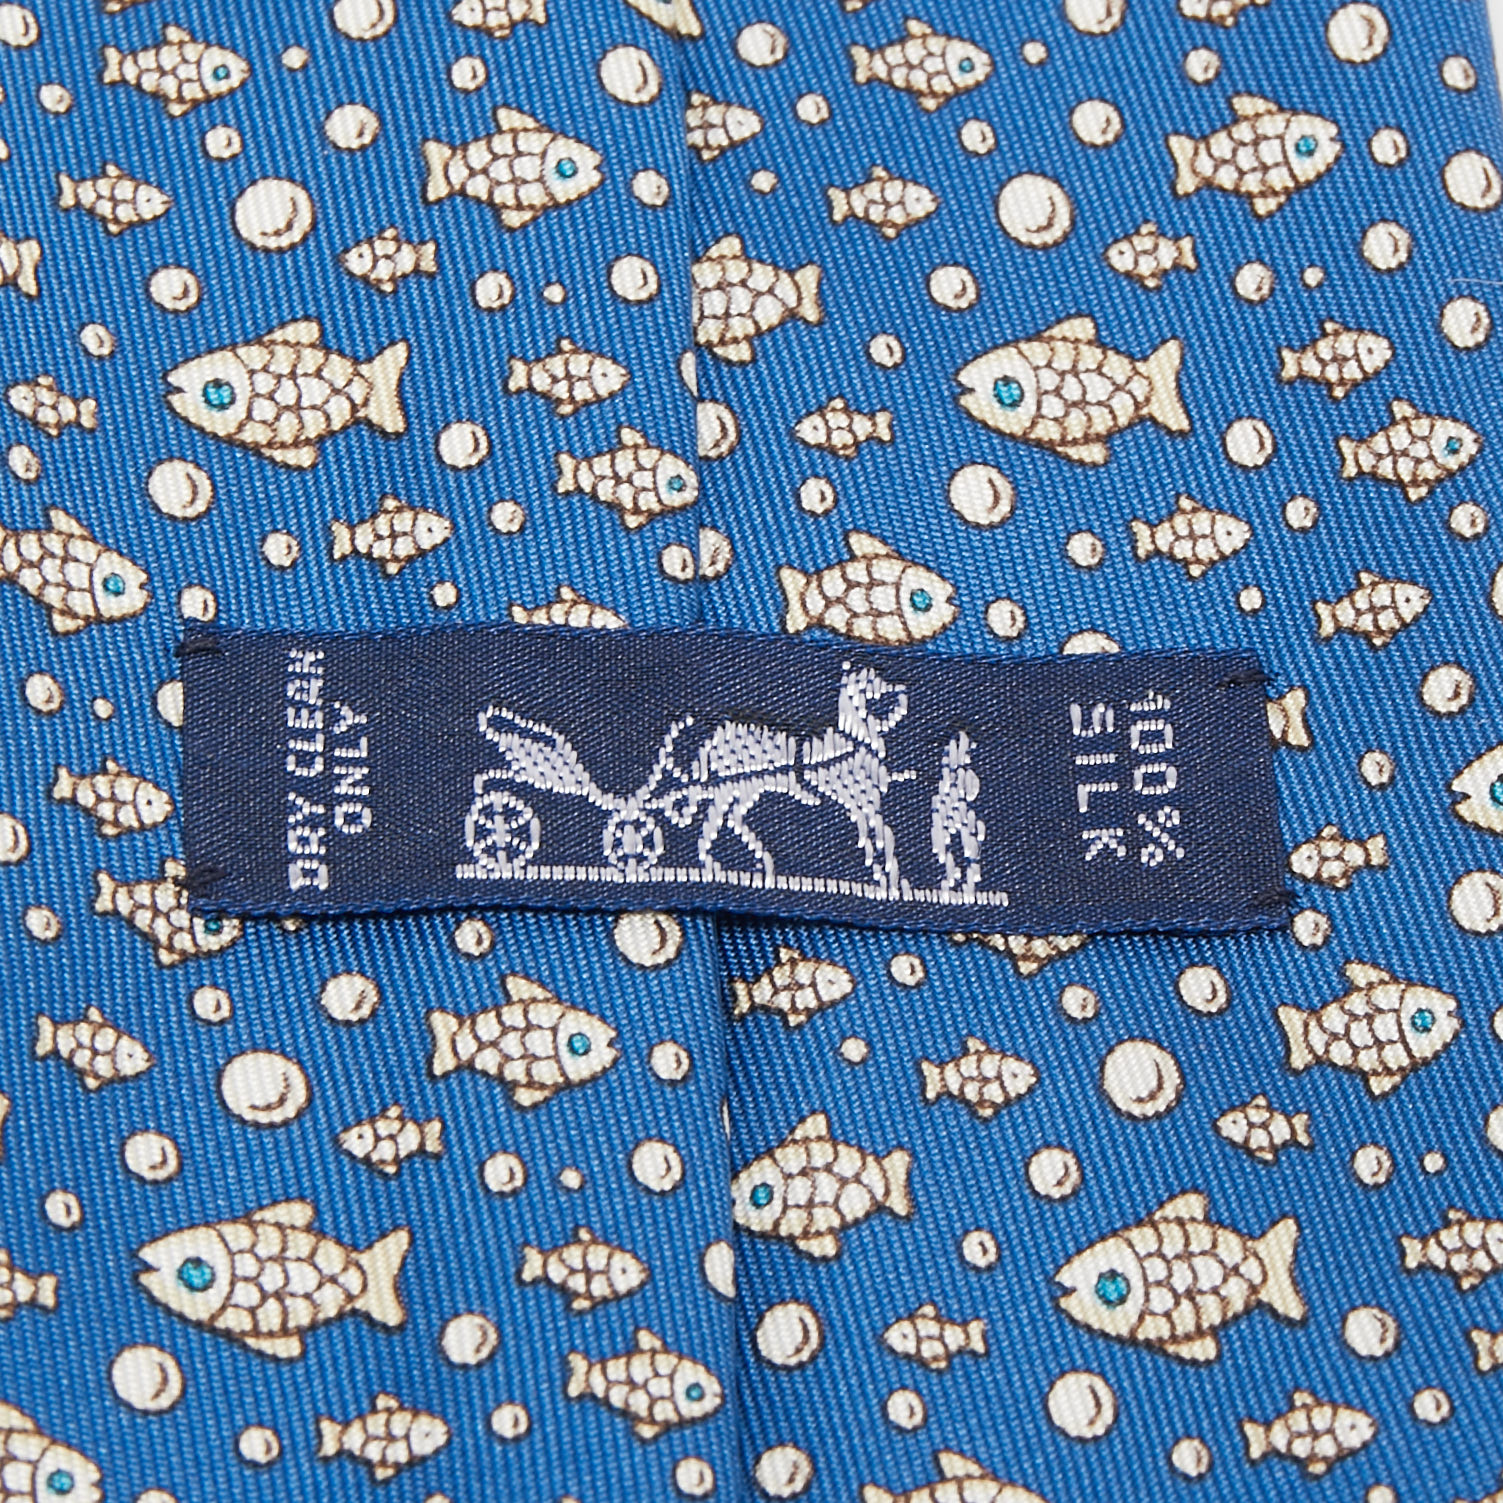 Hermes Blue Fish Print Silk Tie